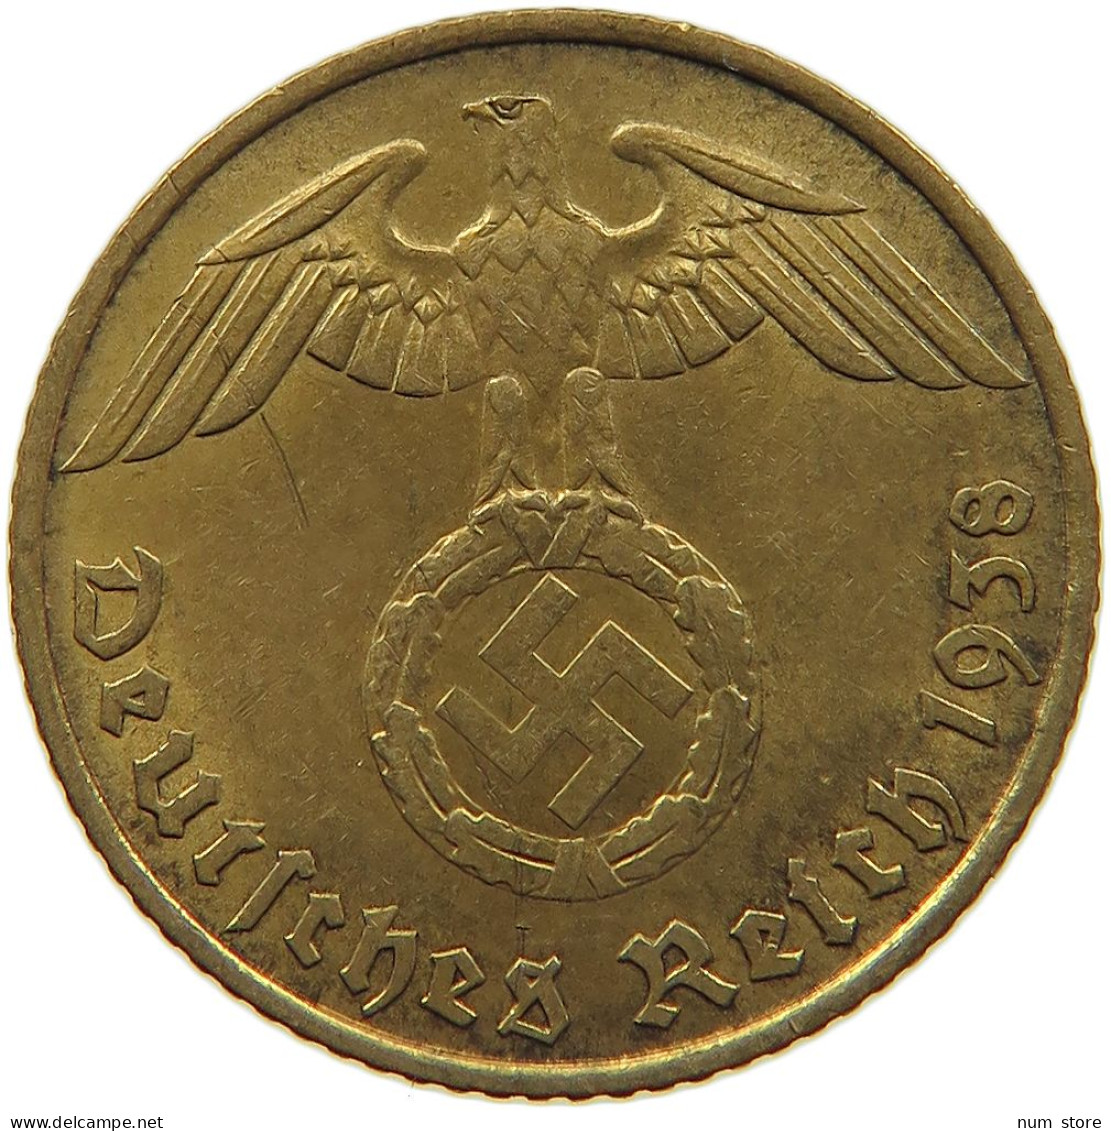 GERMANY 5 REICHSPFENNIG 1938 J #s091 0575 - 5 Reichspfennig